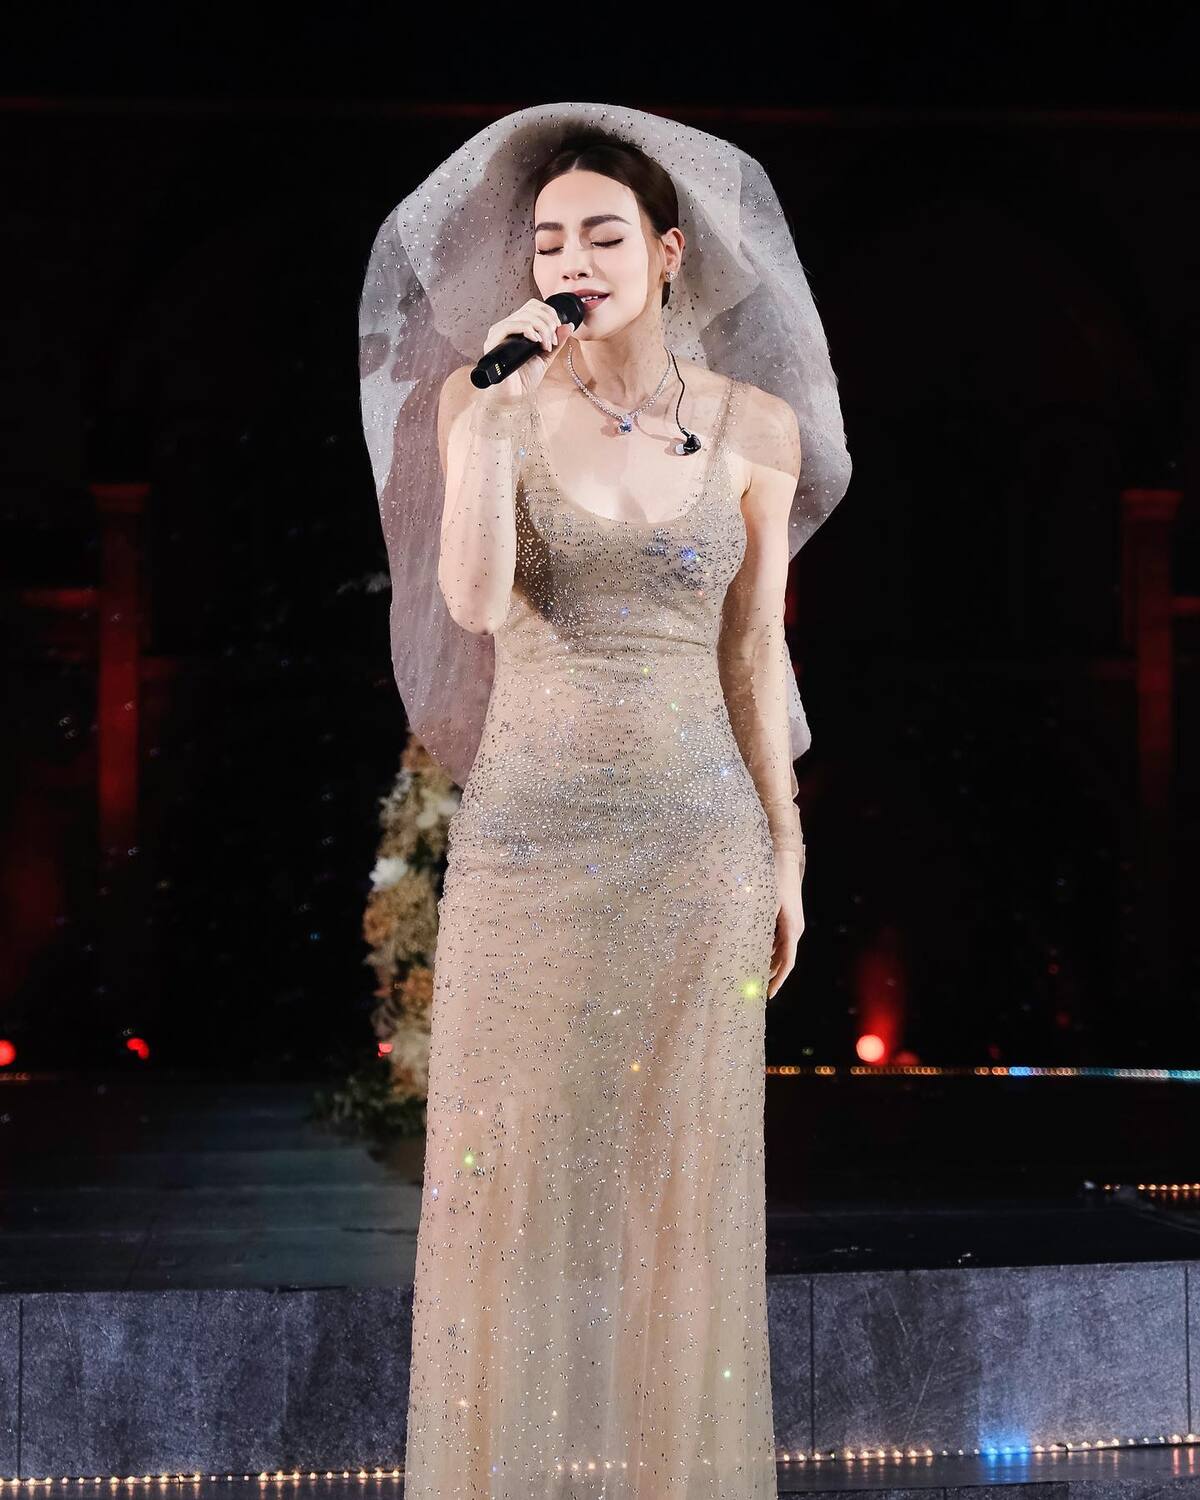 Hồ Ngọc Hà khiến khán giả bất ngờ với những phần thể hiện trong đêm nhạc 'Love Songs'. Ảnh: FBNV